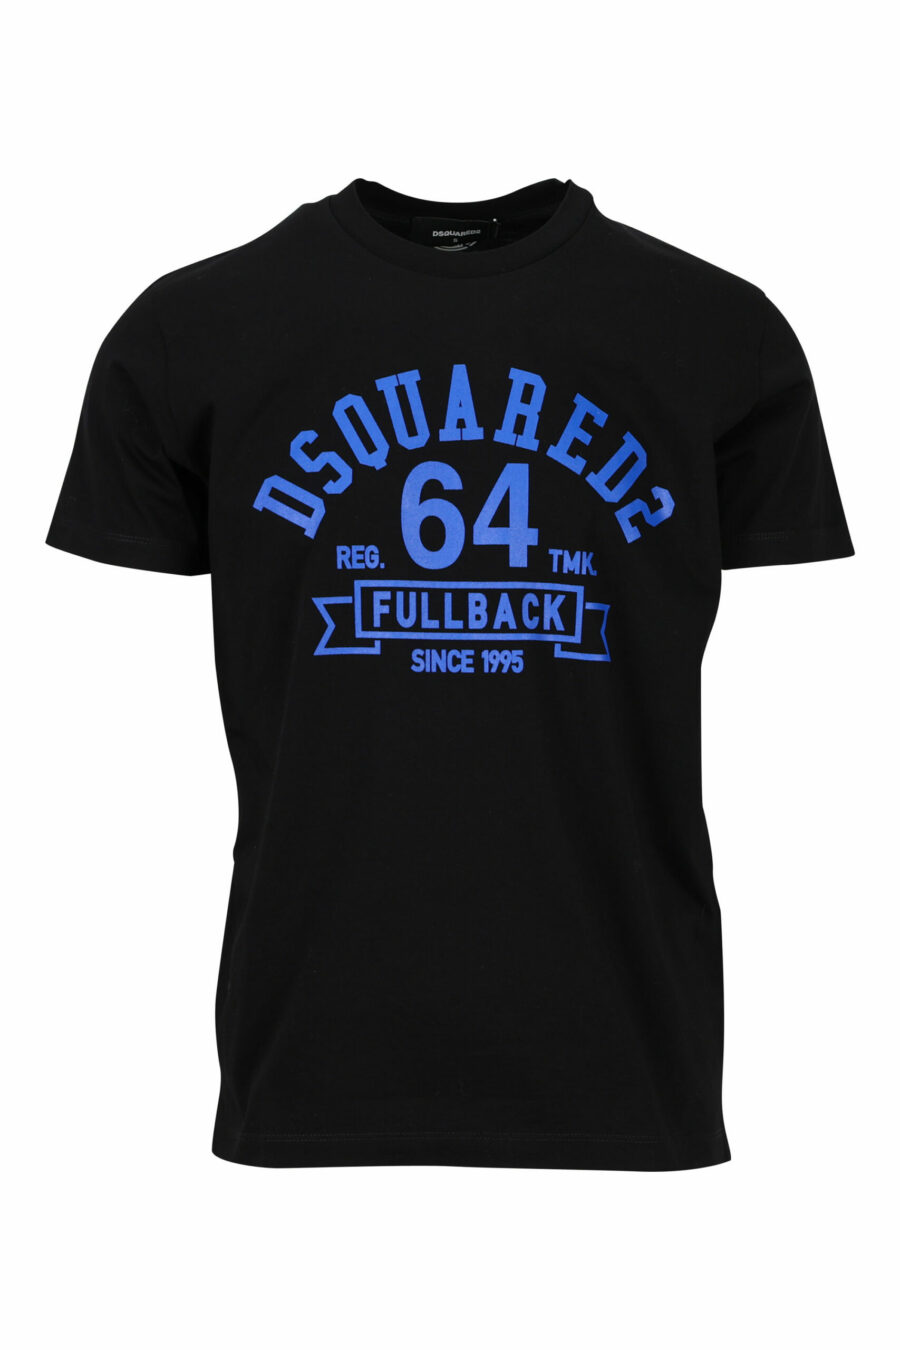 T-shirt preta com maxilogo "college" azul - 8054148086510 scaled